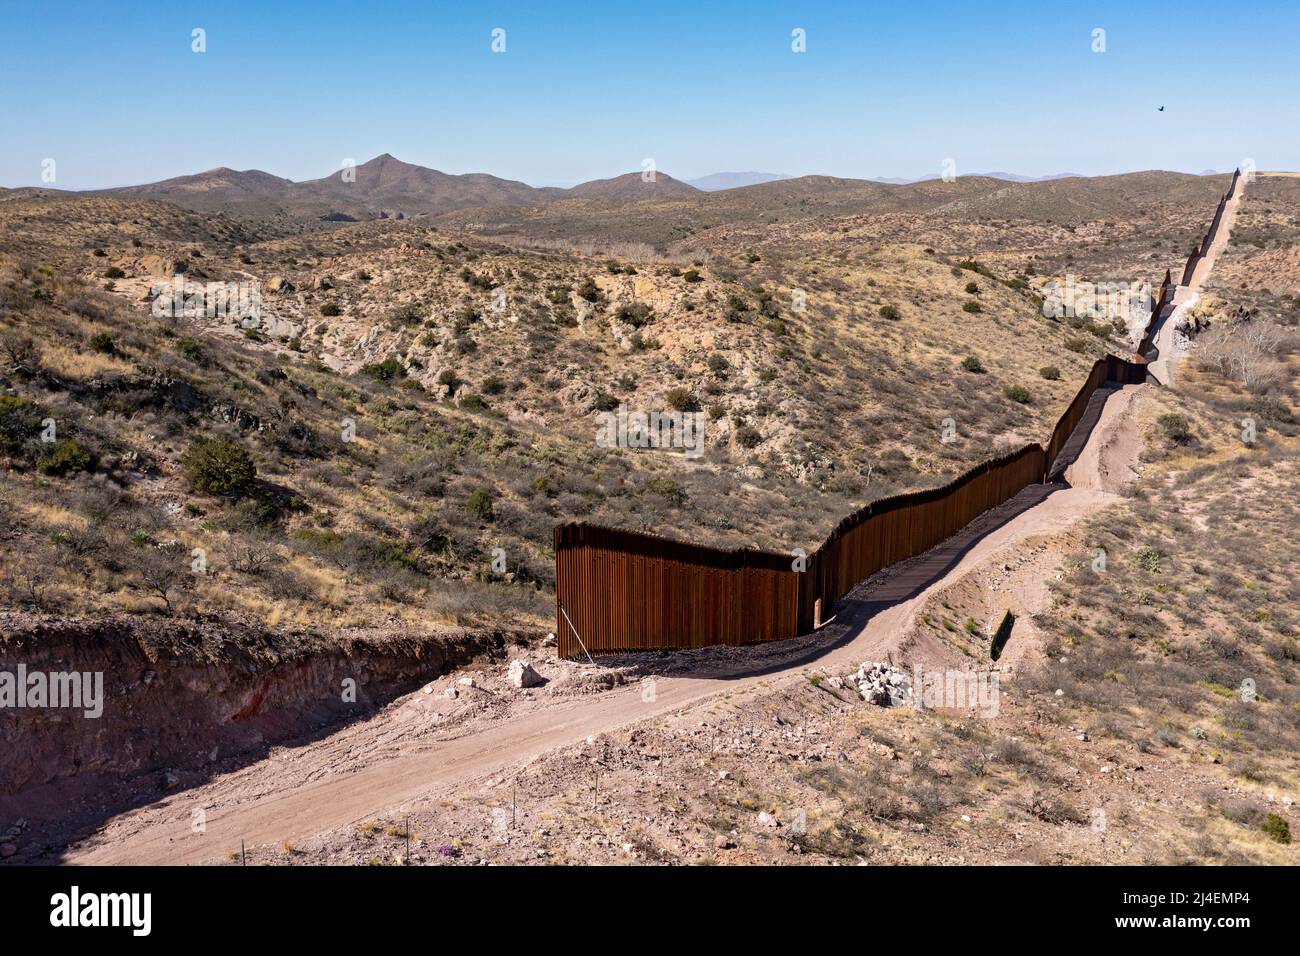 Douglas, Arizona - der Grenzzaun zwischen den USA und Mexiko endet abrupt im Guadalupe Canyon. Präsident Joe Biden stoppte den Neubau des Zauns in dieser r Stockfoto